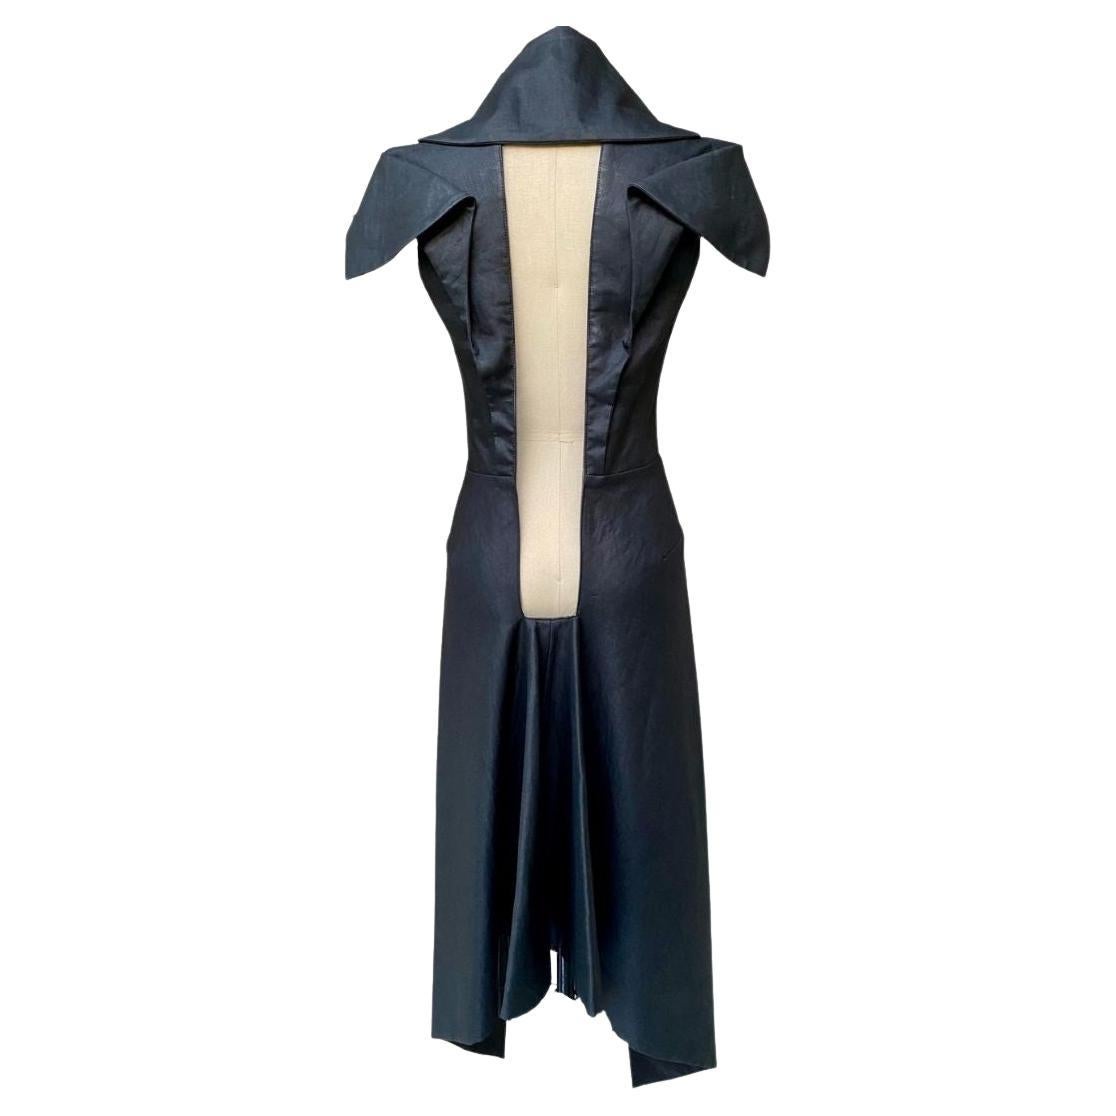 Alexander McQueen Savage Beauty Black Met Museum Coat/Dress S/S 1999 Size 42IT For Sale